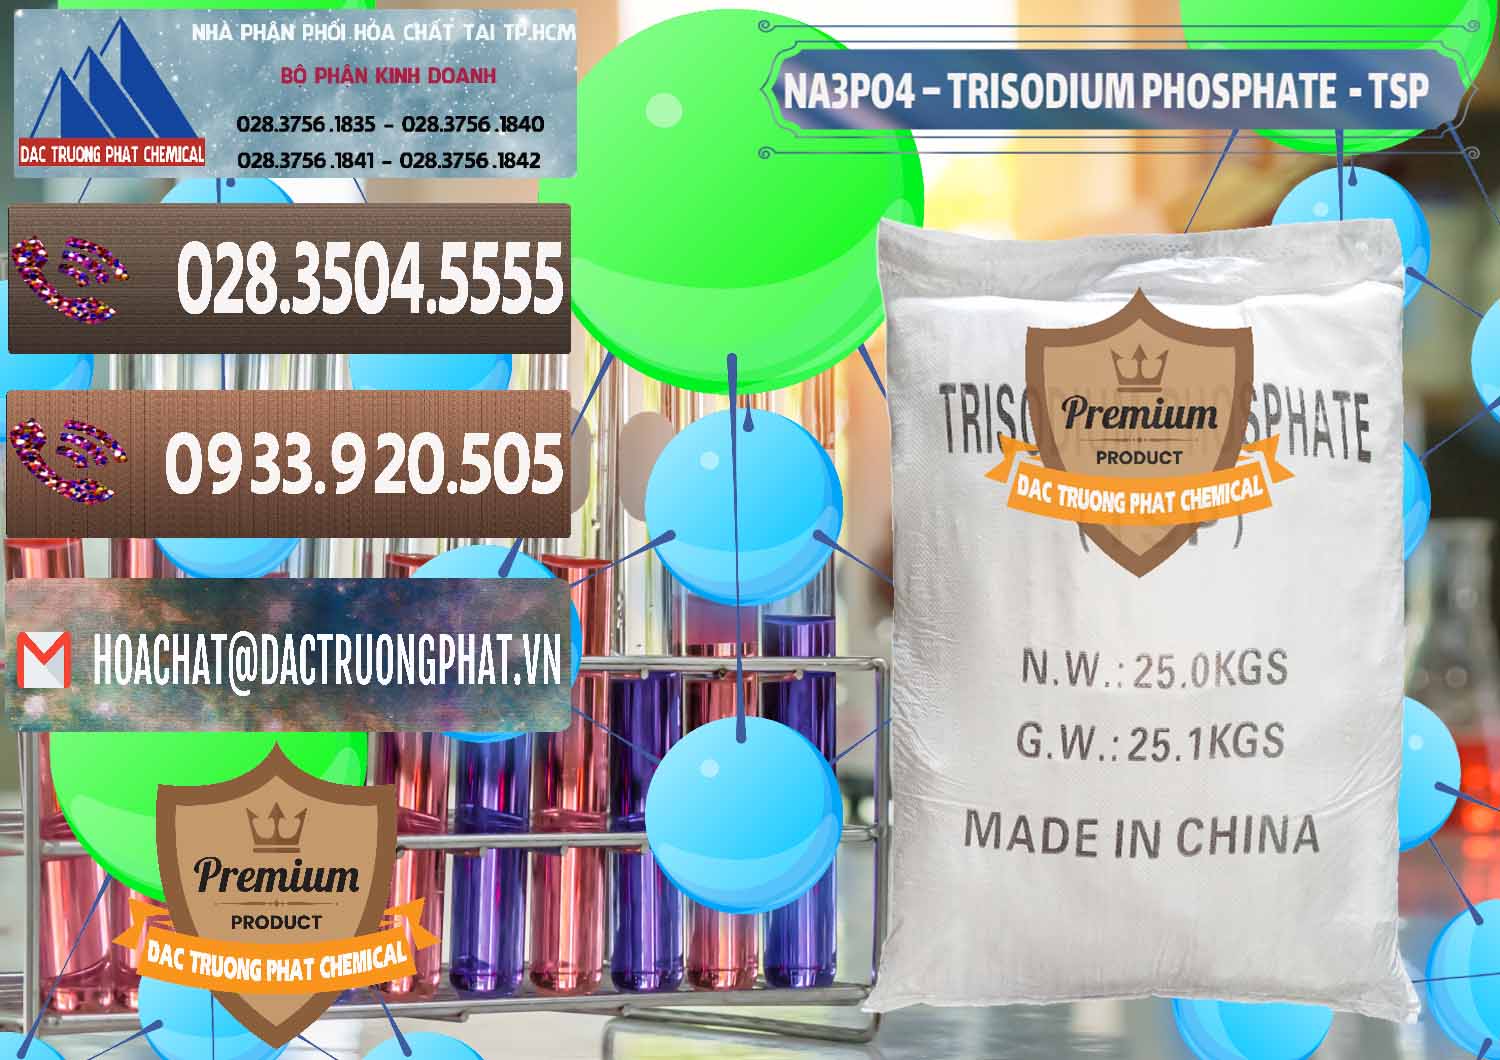 Nhà phân phối _ bán Na3PO4 – Trisodium Phosphate Trung Quốc China TSP - 0103 - Cty cung cấp _ phân phối hóa chất tại TP.HCM - hoachatviet.net